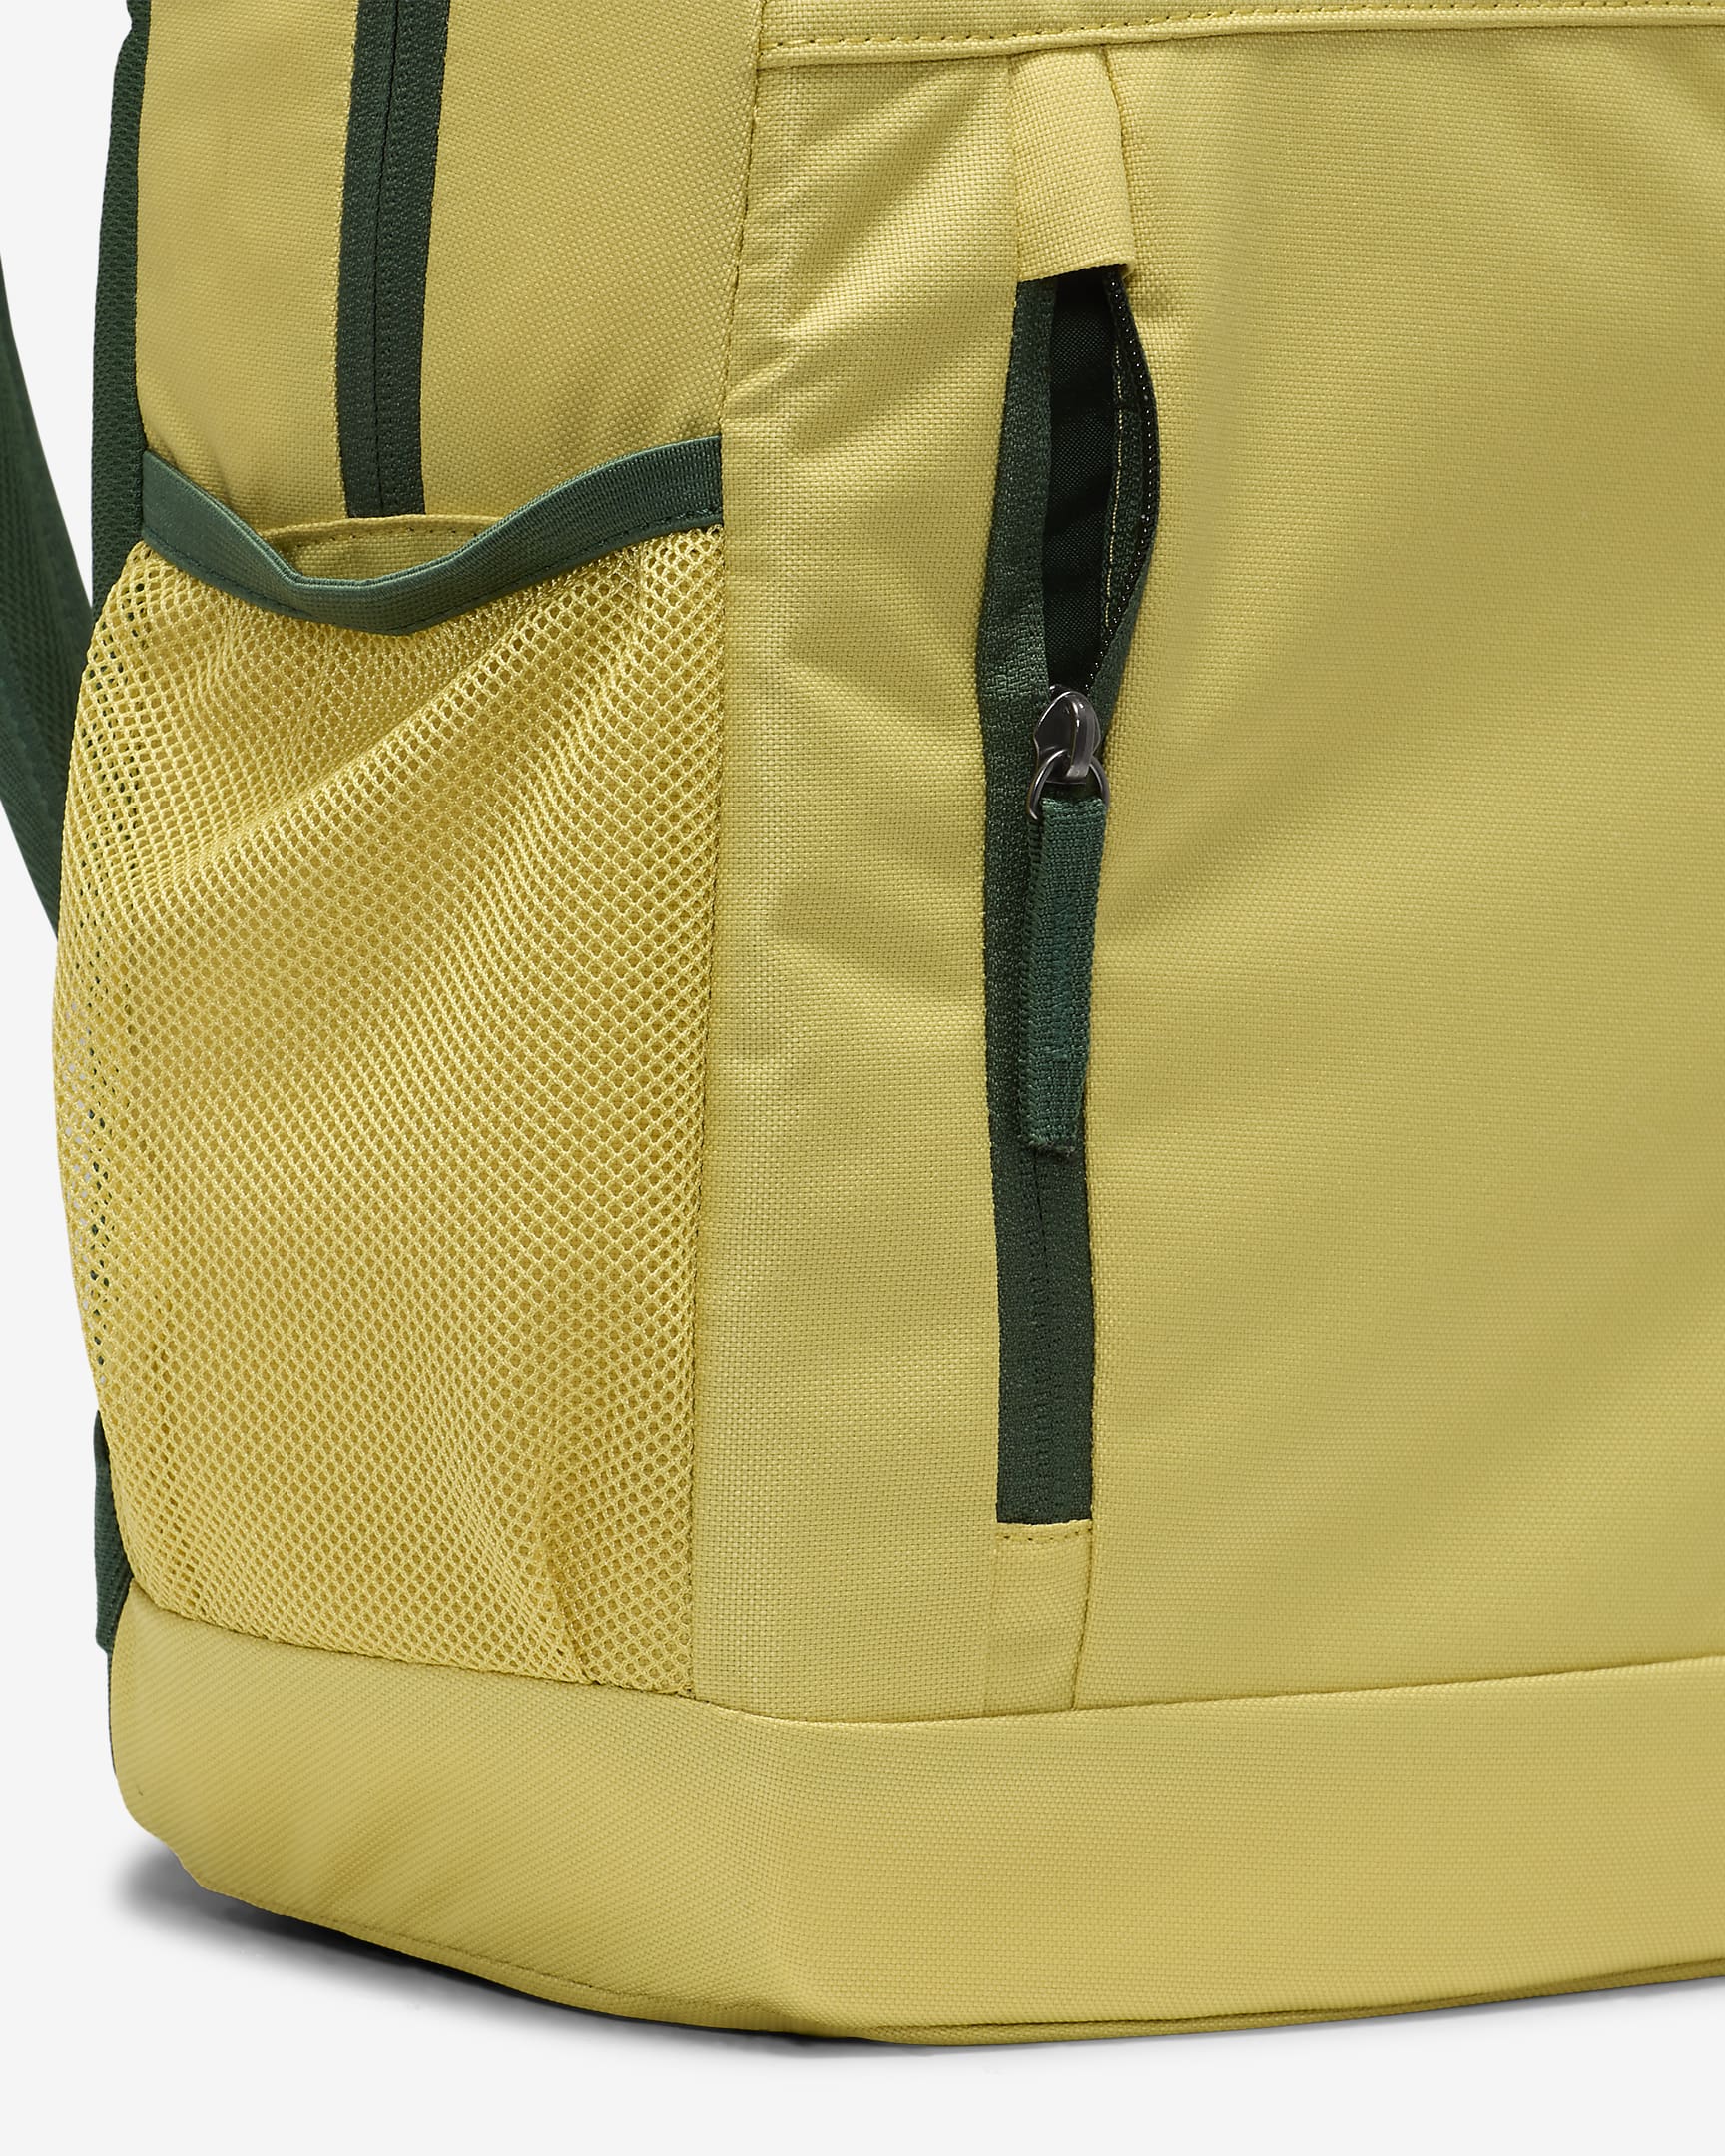 Nike Kids' Backpack (20L) - Saturn Gold/Fir/Fir